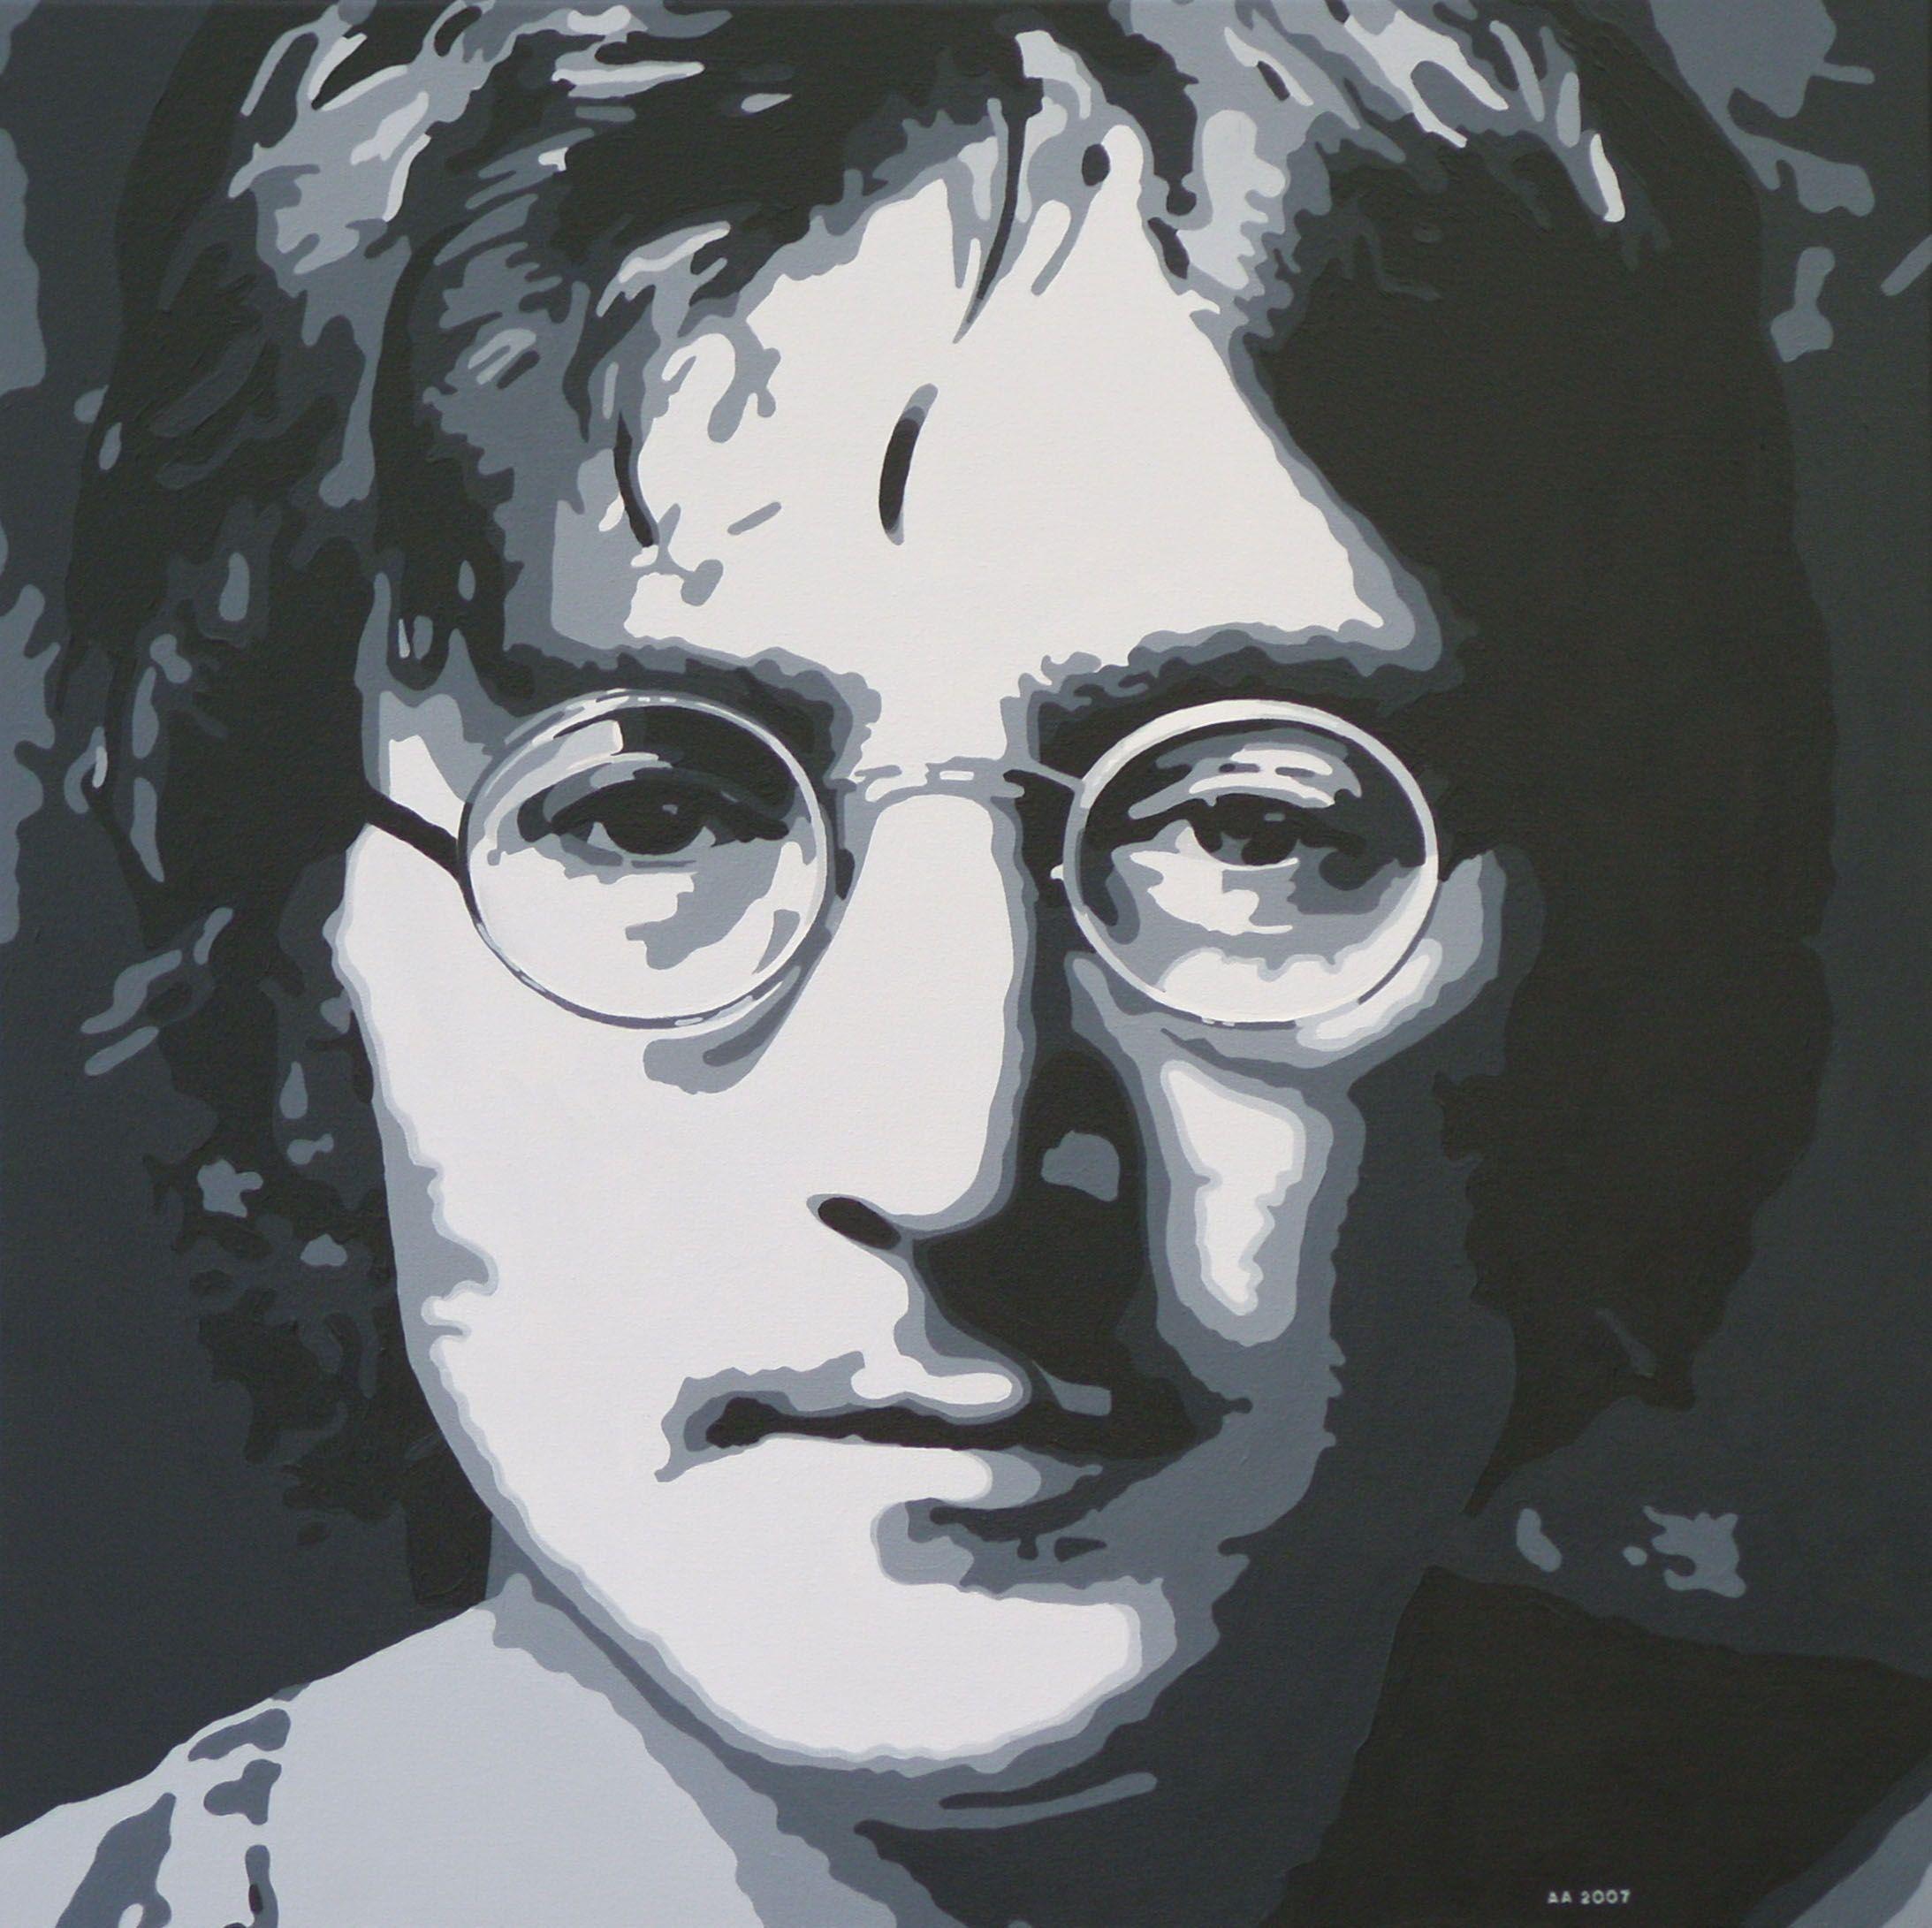 More John Lennon wallpaper. John Lennon wallpaper